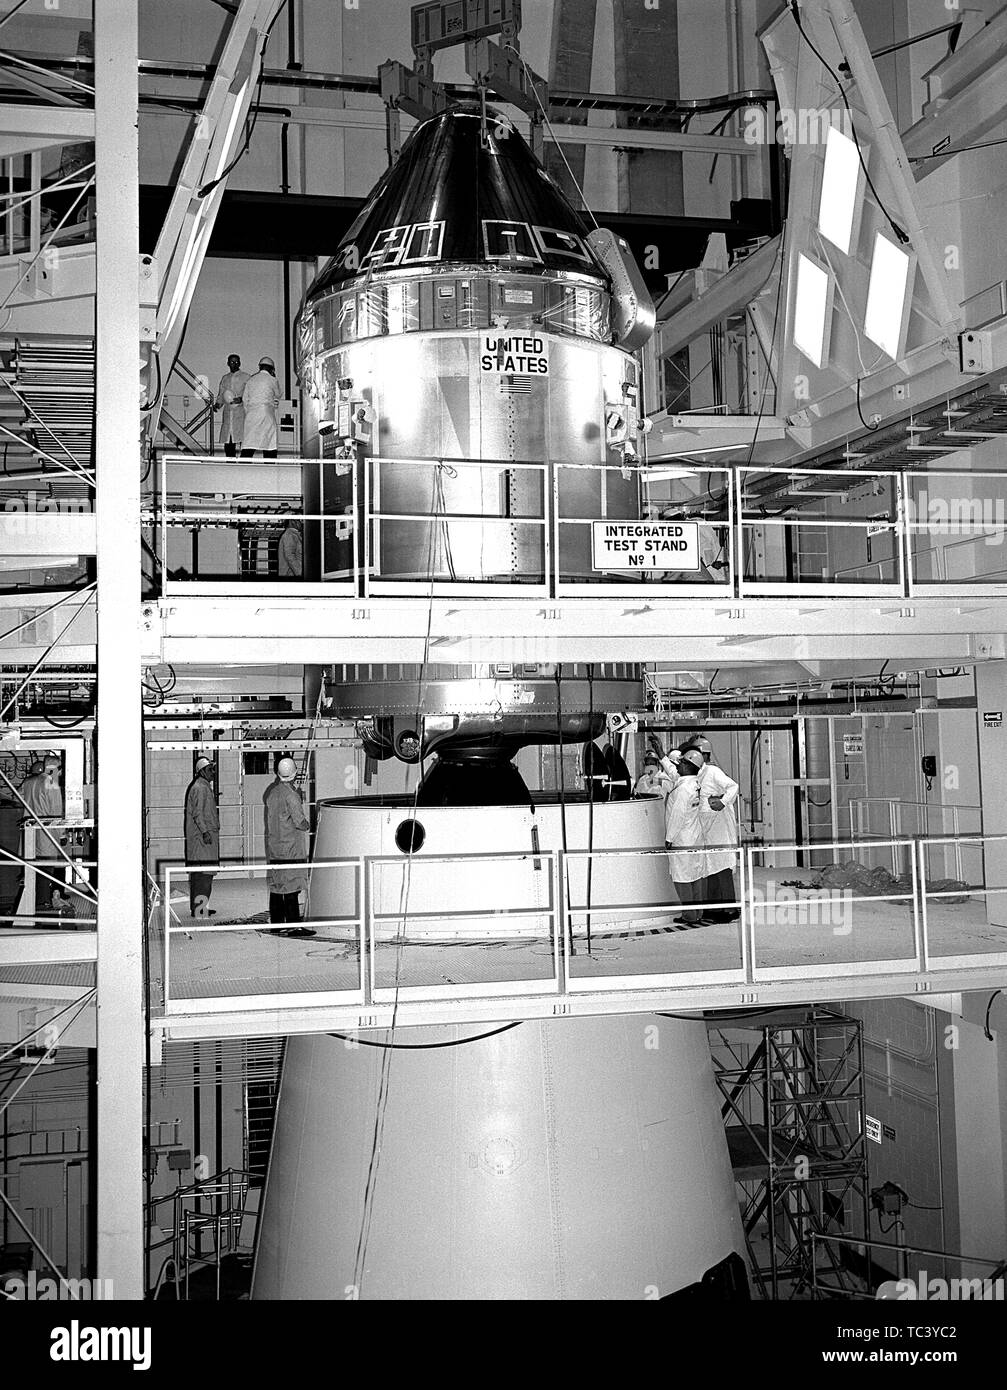 NASA-Ingenieure Paarung der Apollo 11 Befehl Service Module (CSM) an die Saturn V Lunar Module Adapter, 11. April 1969. Mit freundlicher Genehmigung der Nationalen Luft- und Raumfahrtbehörde (NASA). () Stockfoto